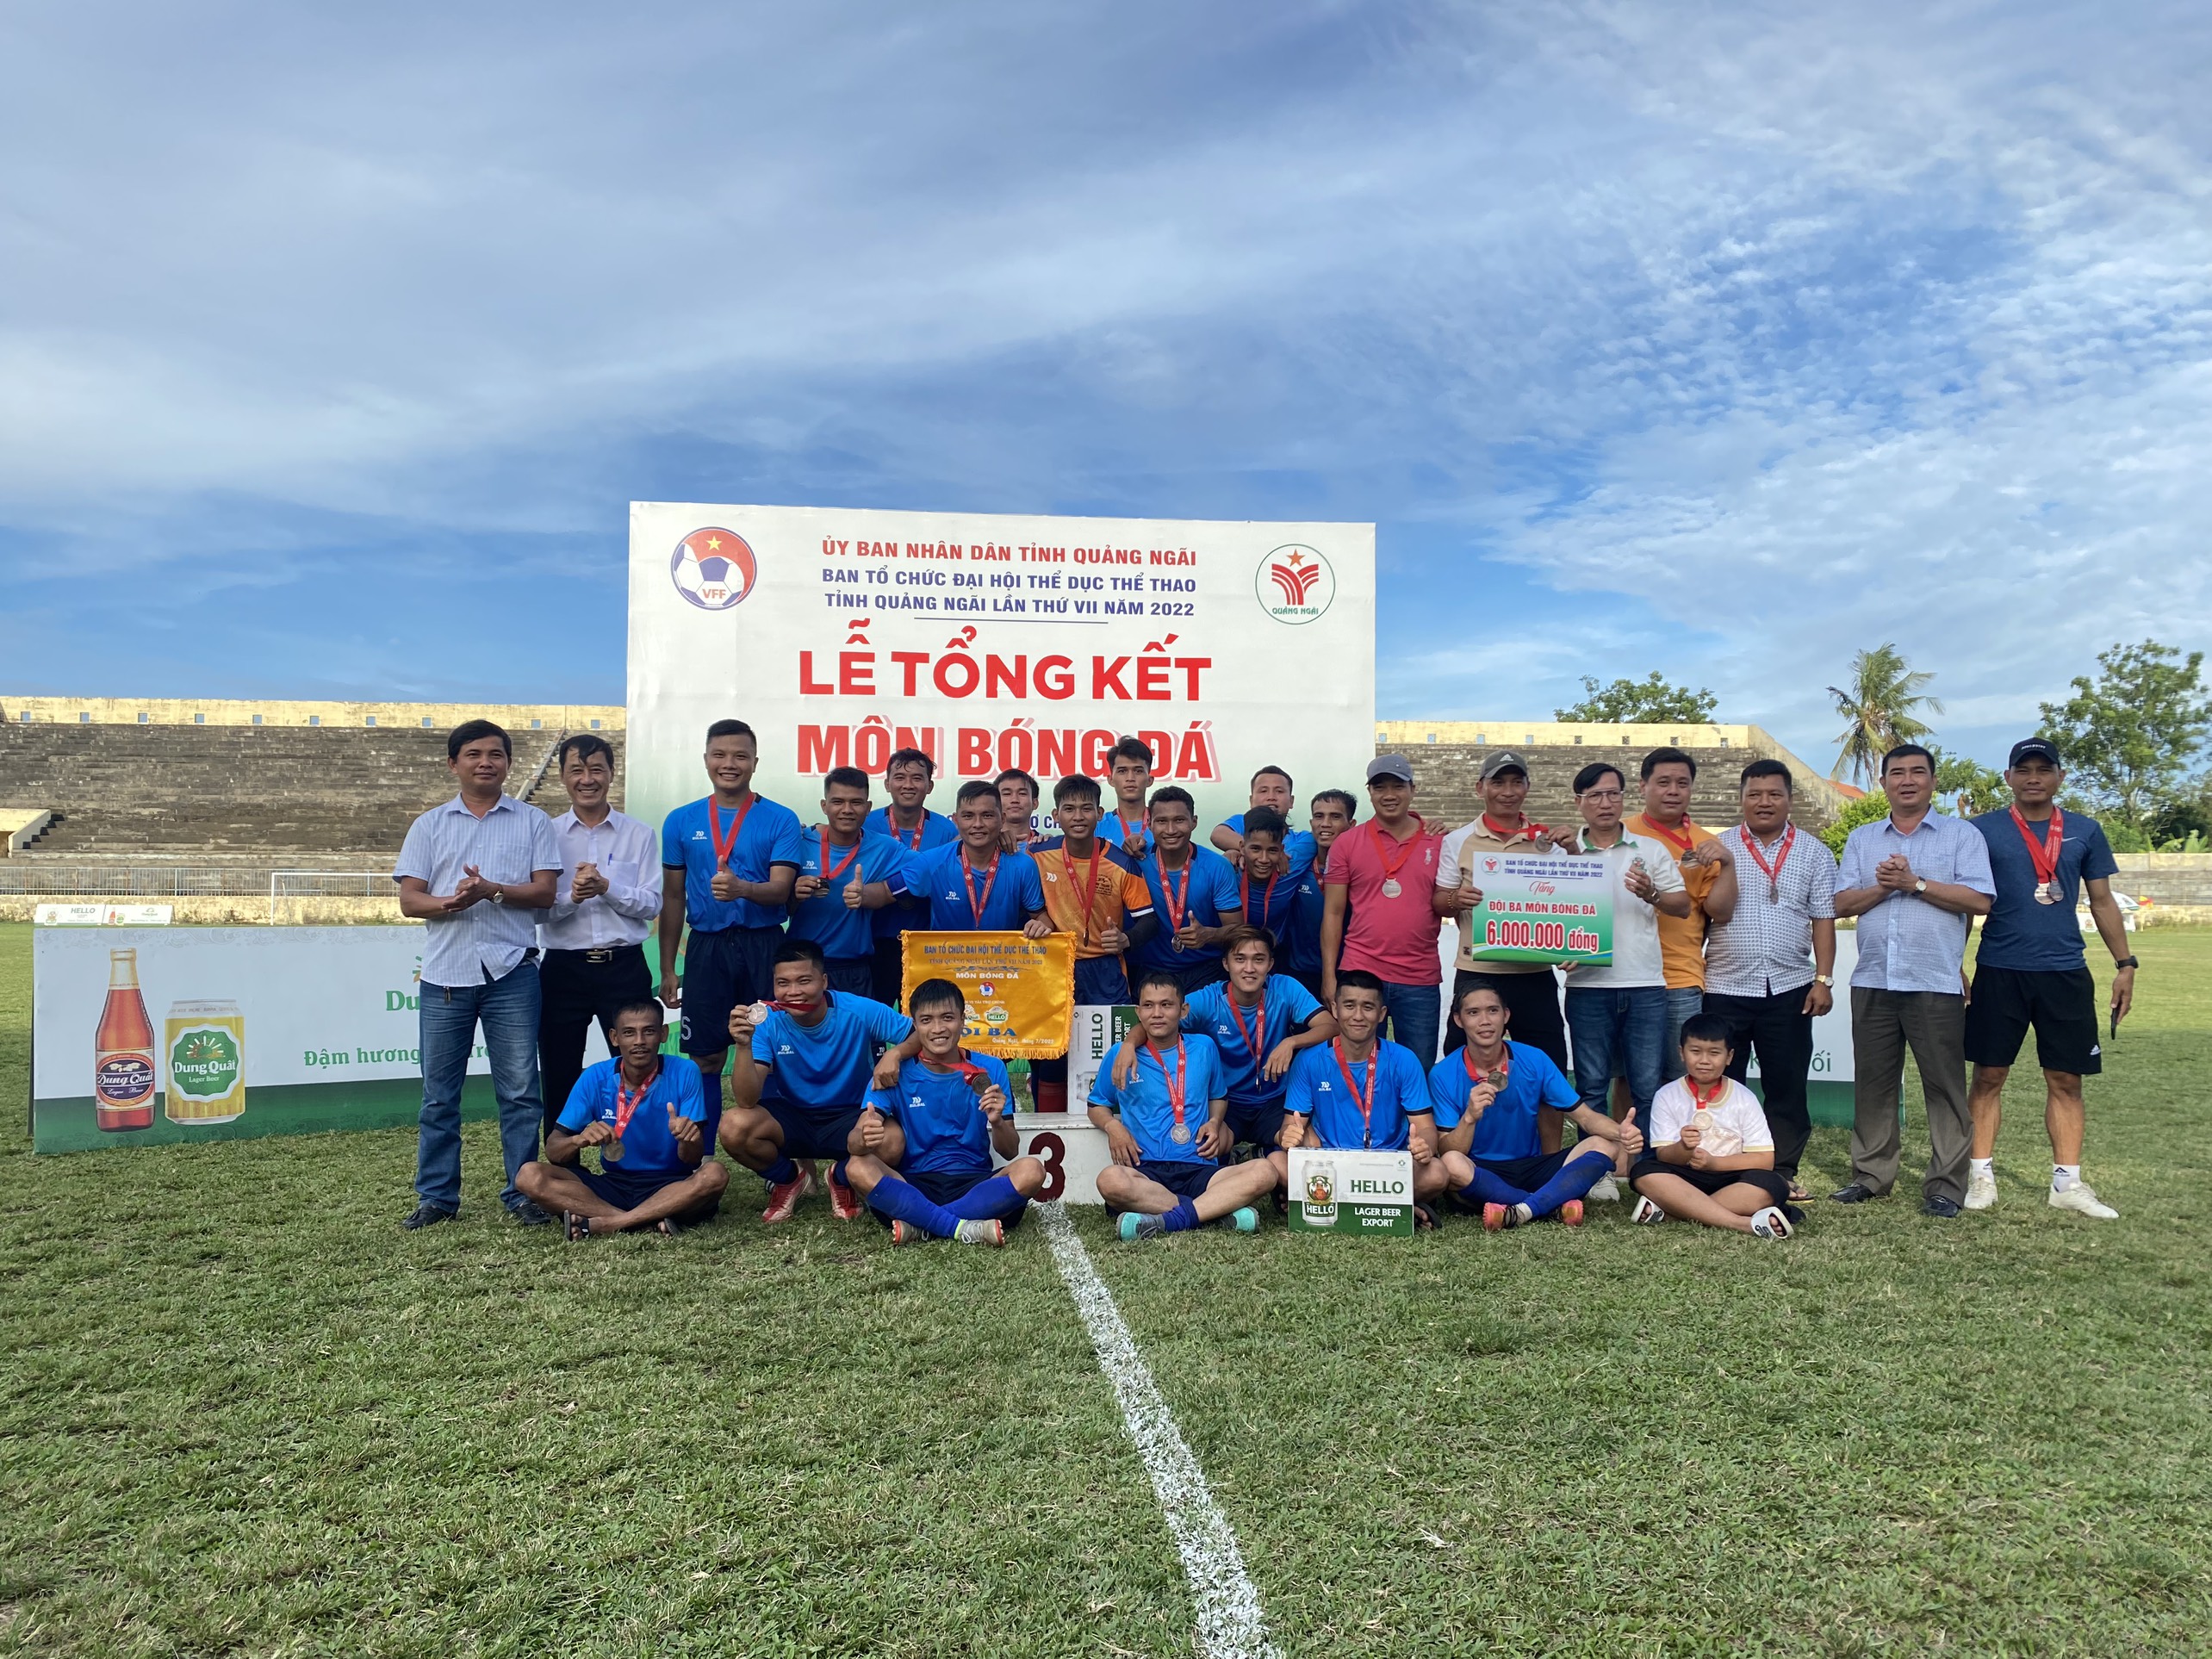 Đội bóng đá Ba Tơ đạt Huy chương đồng môn bóng đá nam tại Đại hội Thể dục thể thao tỉnh Quảng Ngãi lần thứ VII năm 2022